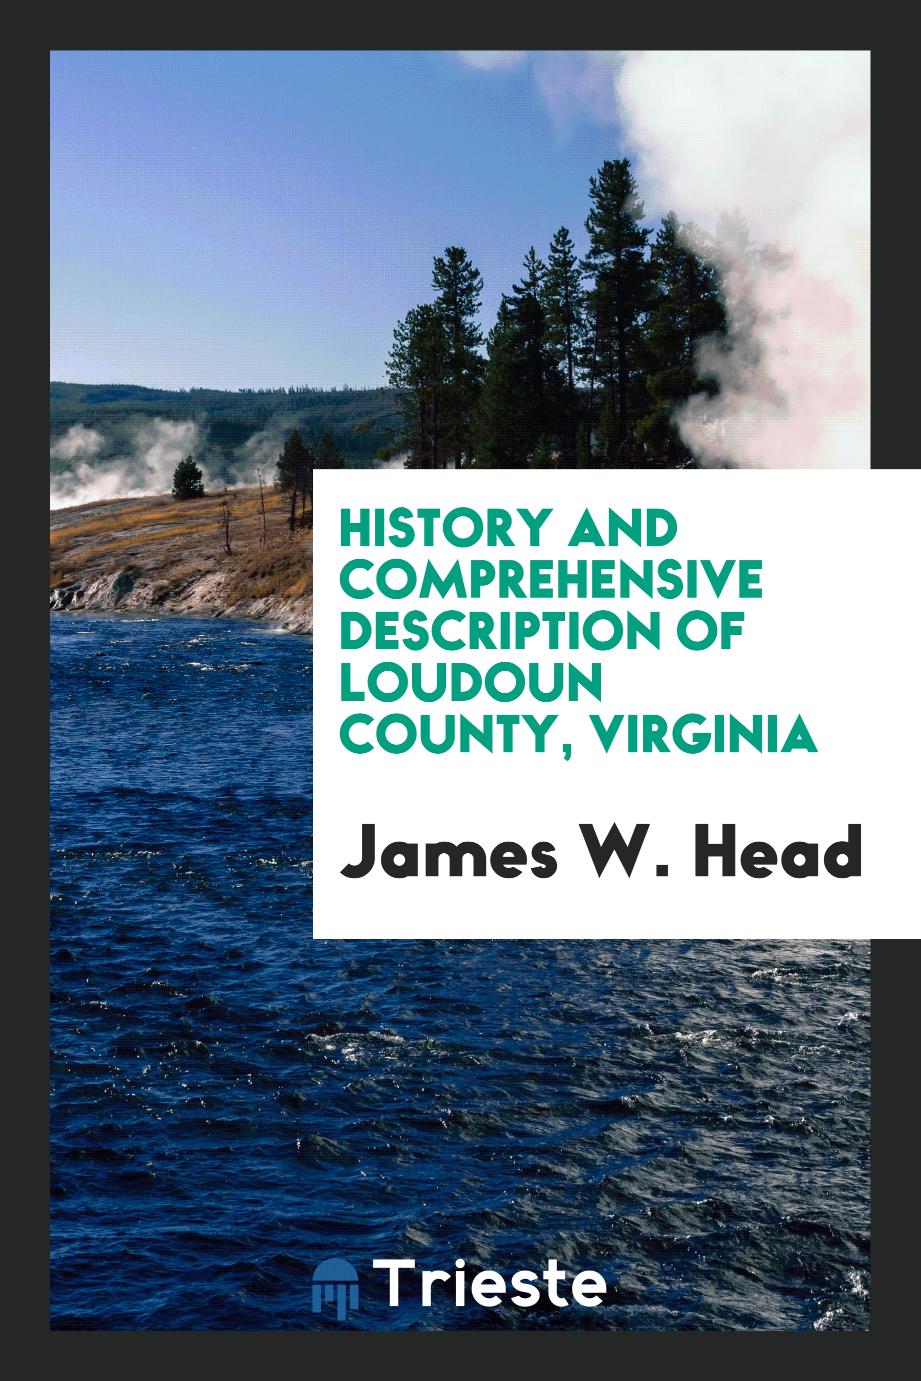 History and comprehensive description of Loudoun County, Virginia